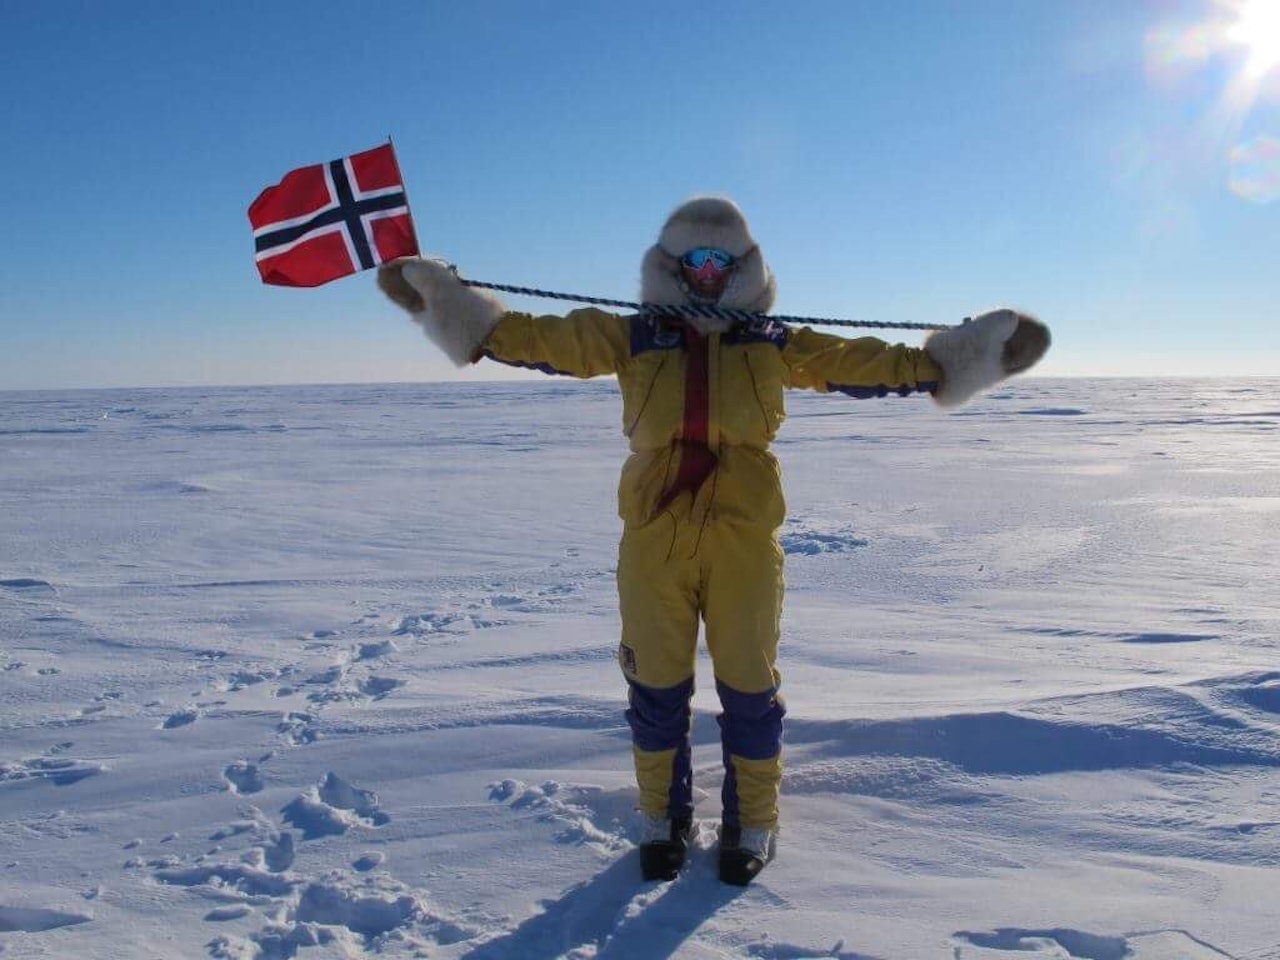 HEIST FLAGG: Til ære for våre polare heltar, Roald Amundsen og hans hjelpemenn. 